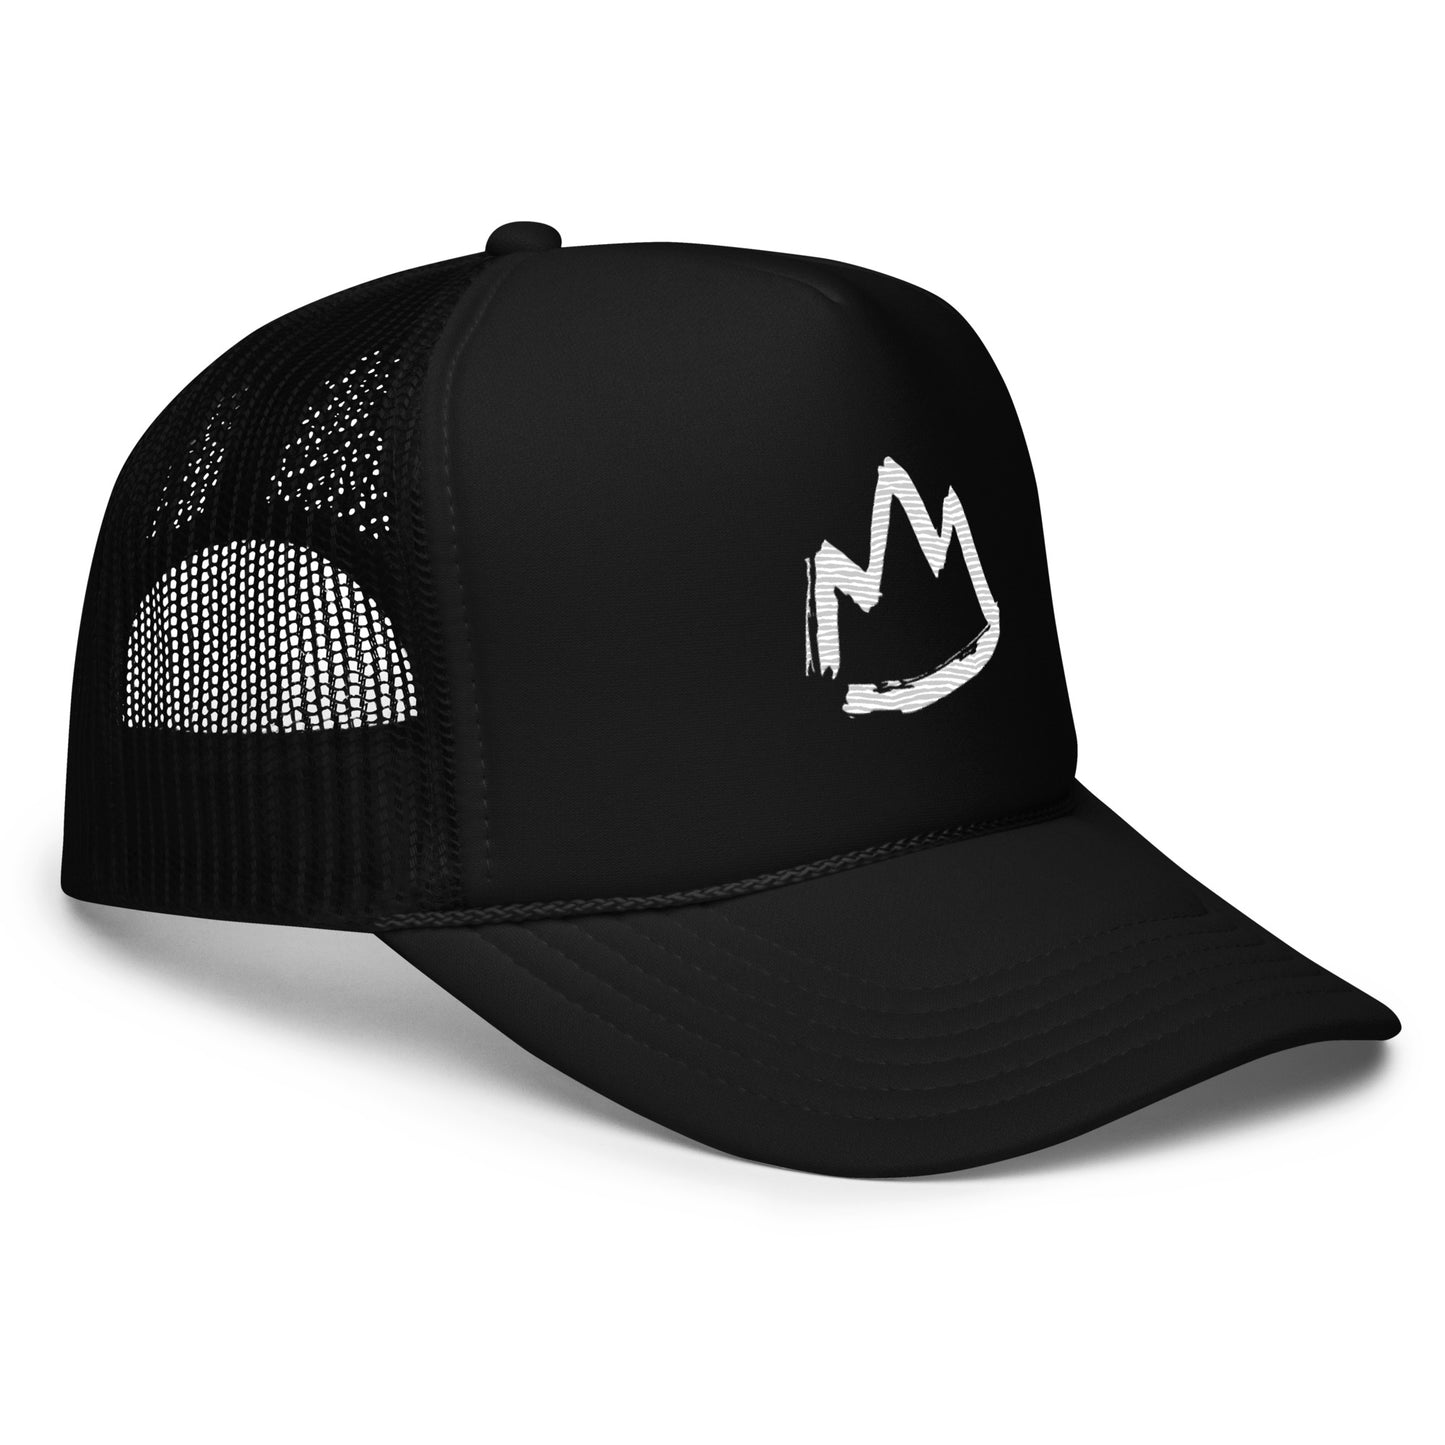 Crown Foam Trucker Hat (black)